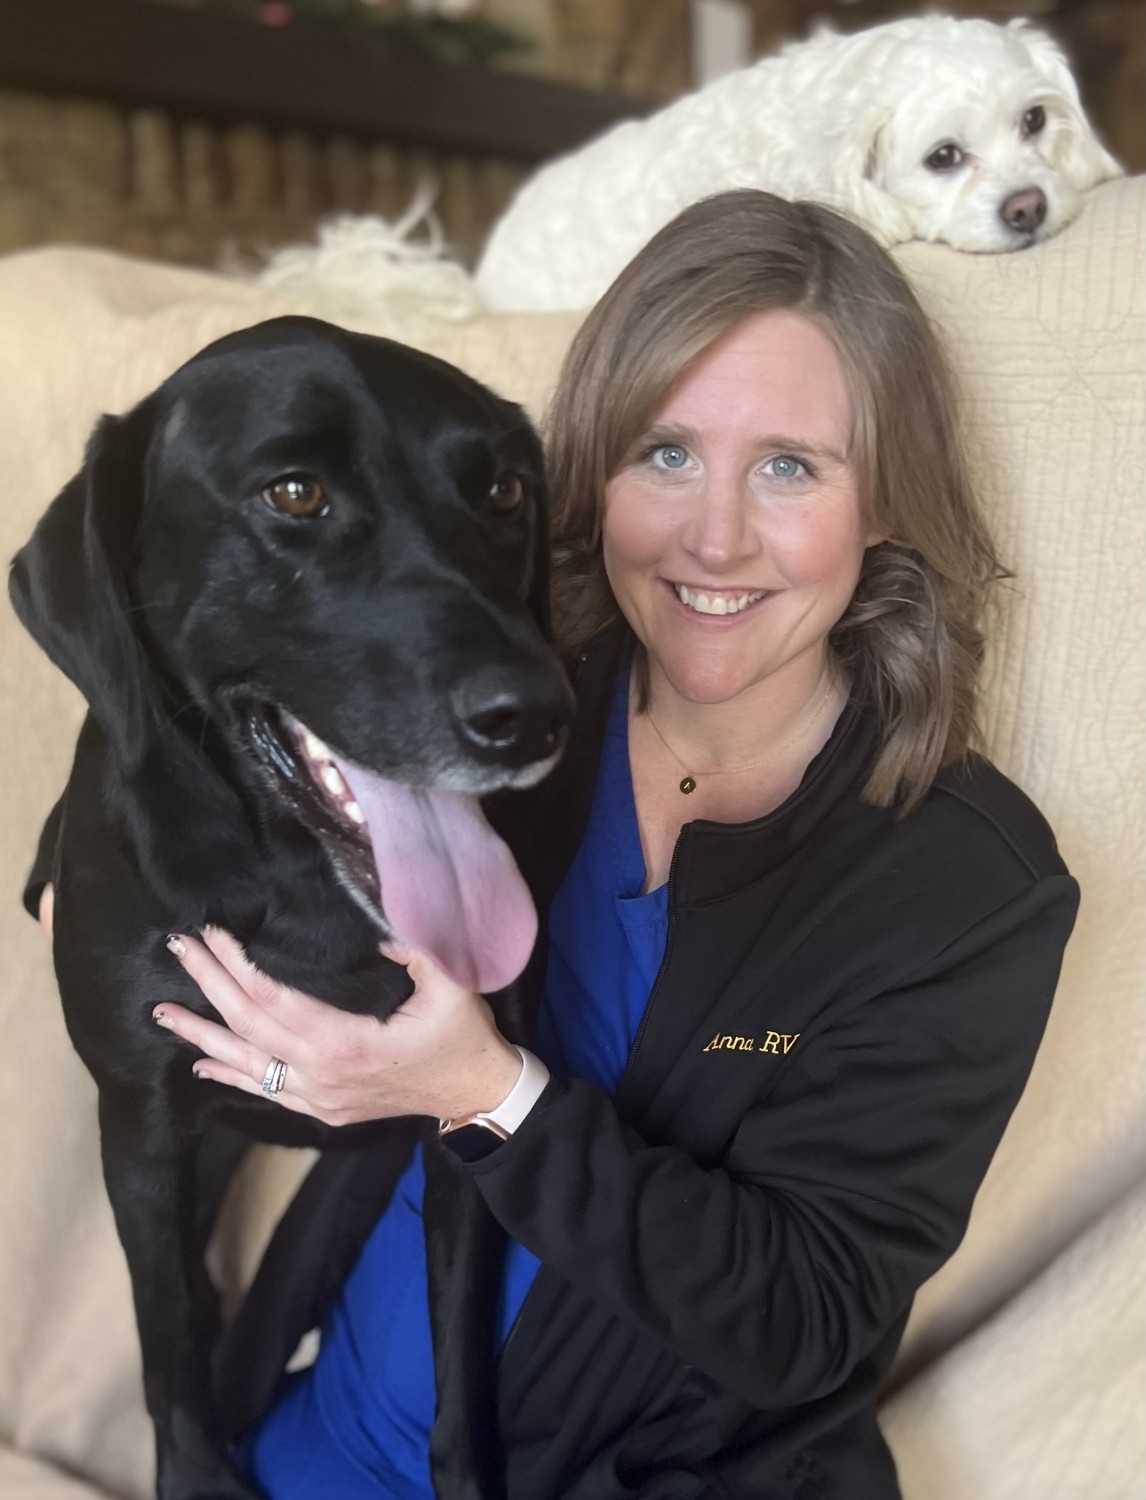 Anna - Registered Veterinary Technician